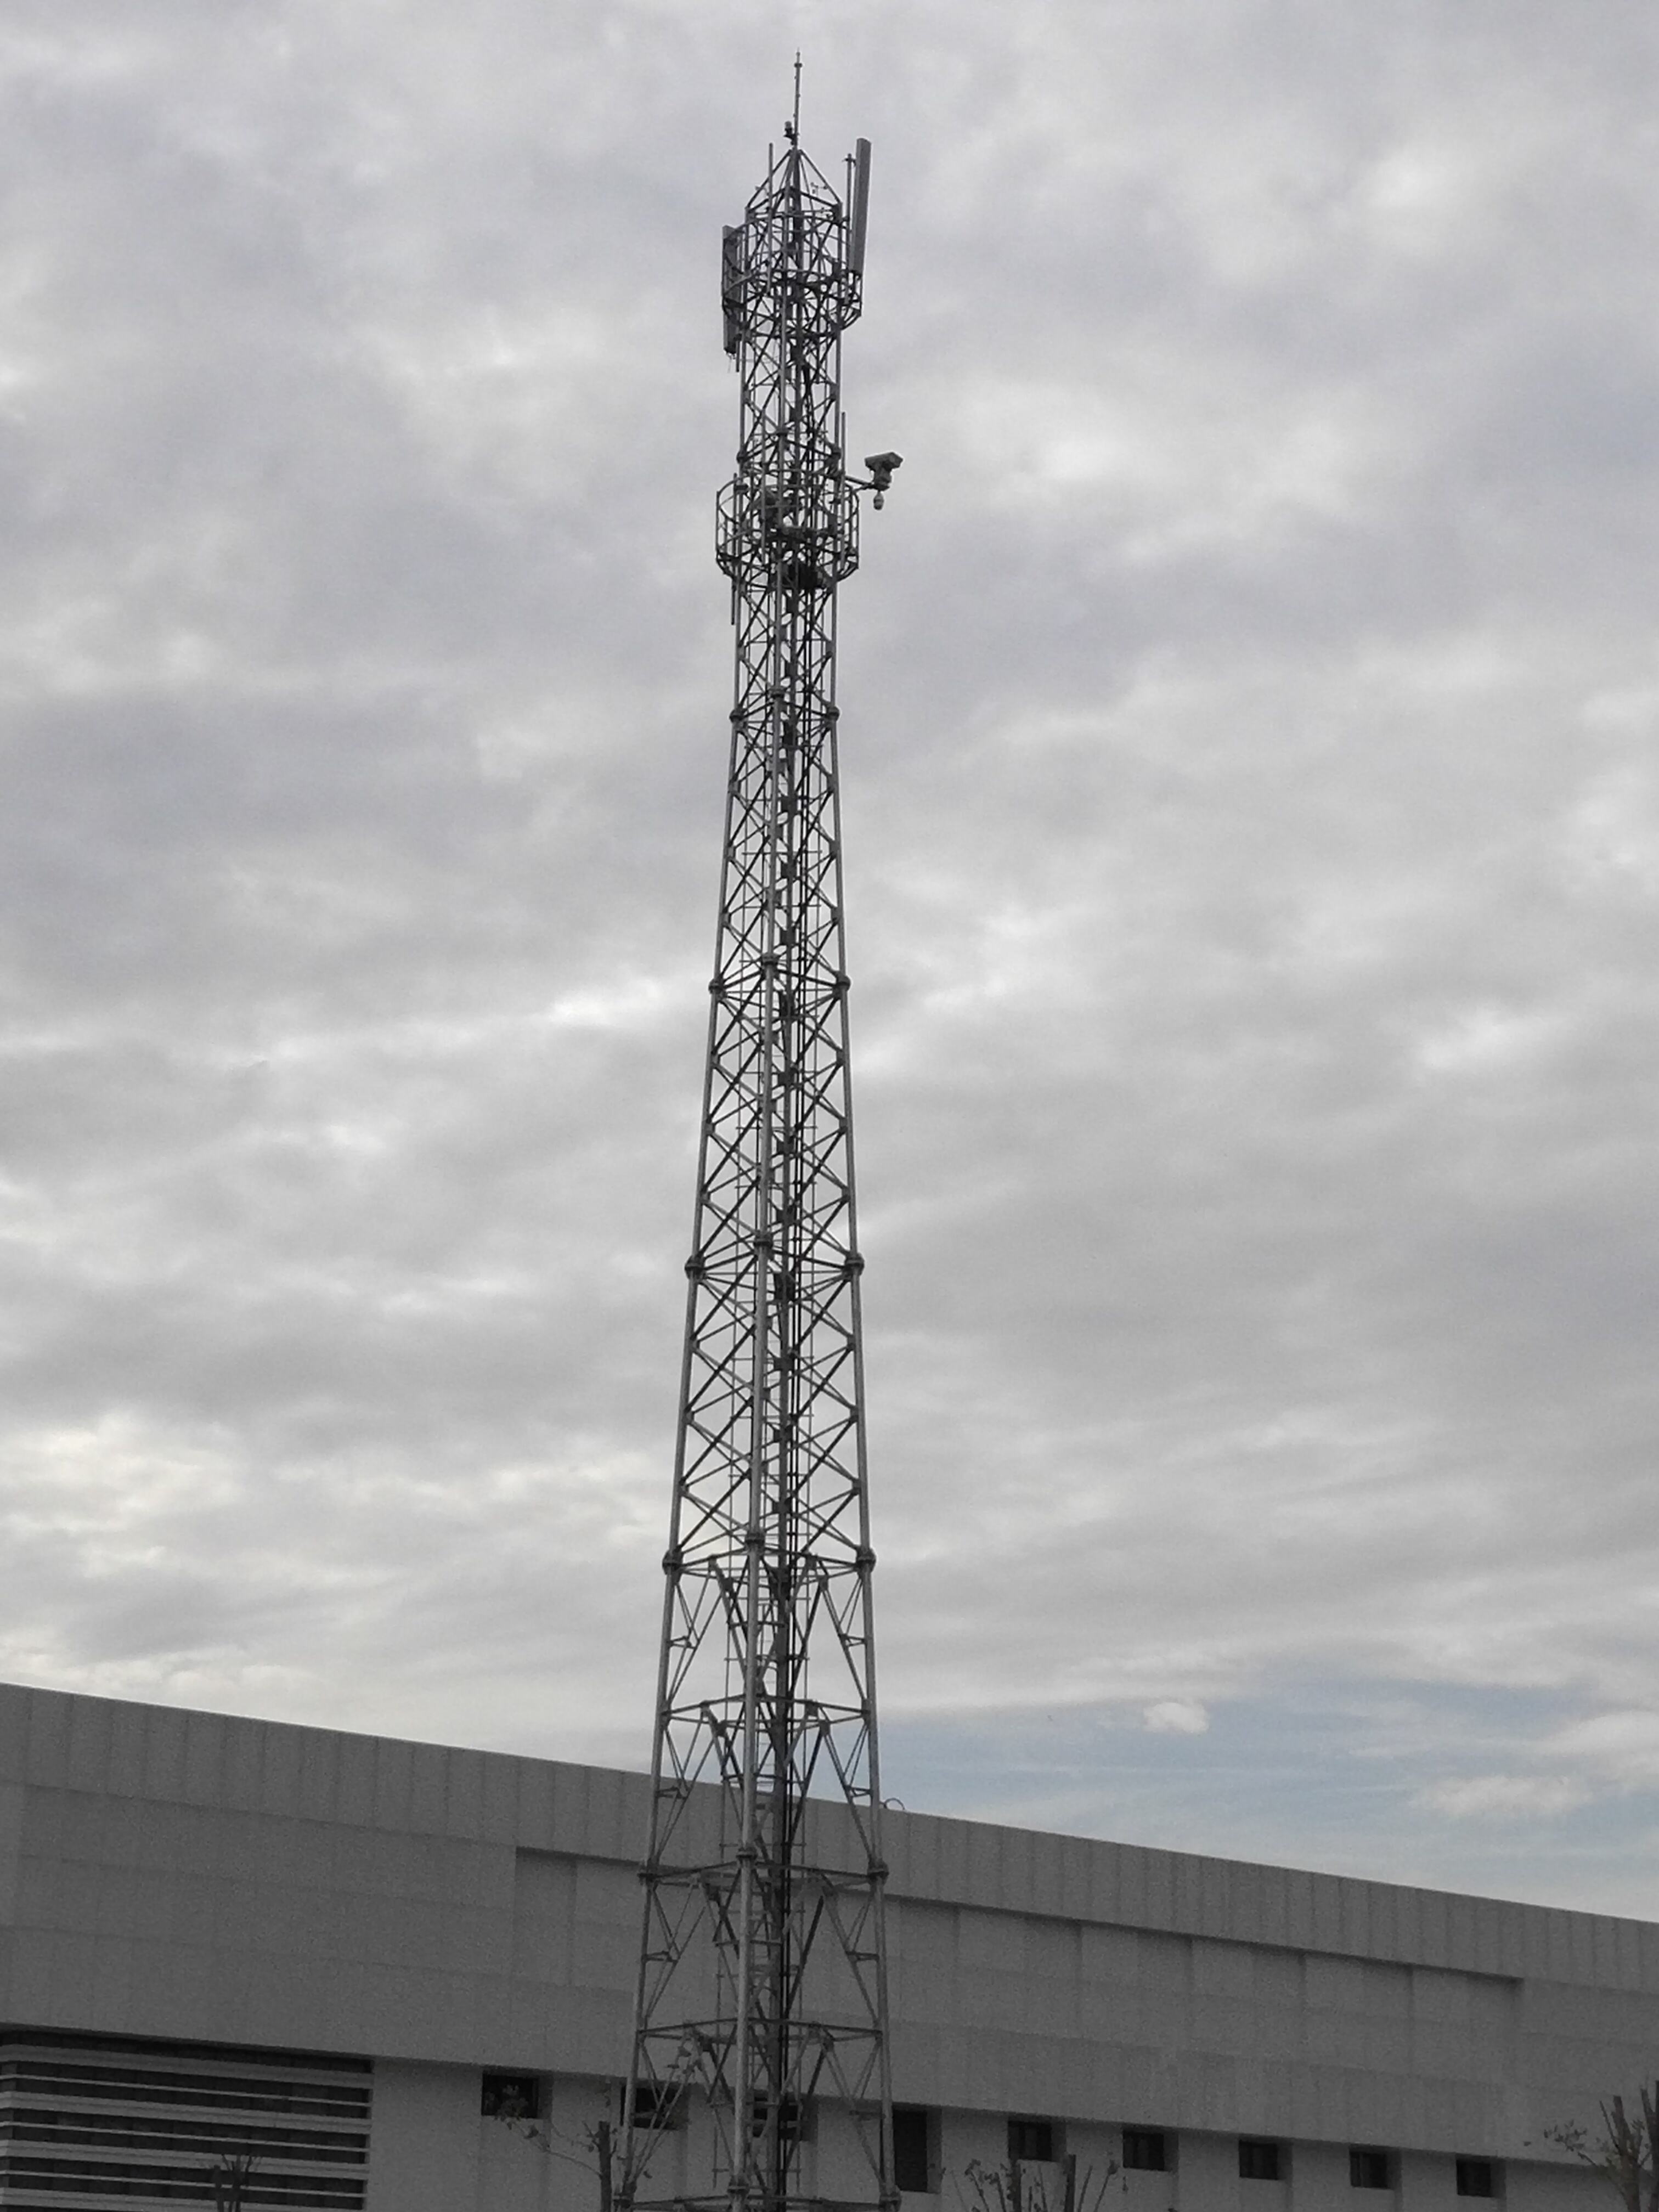 Dettagli della torre d'acciaio delle telecomunicazioni